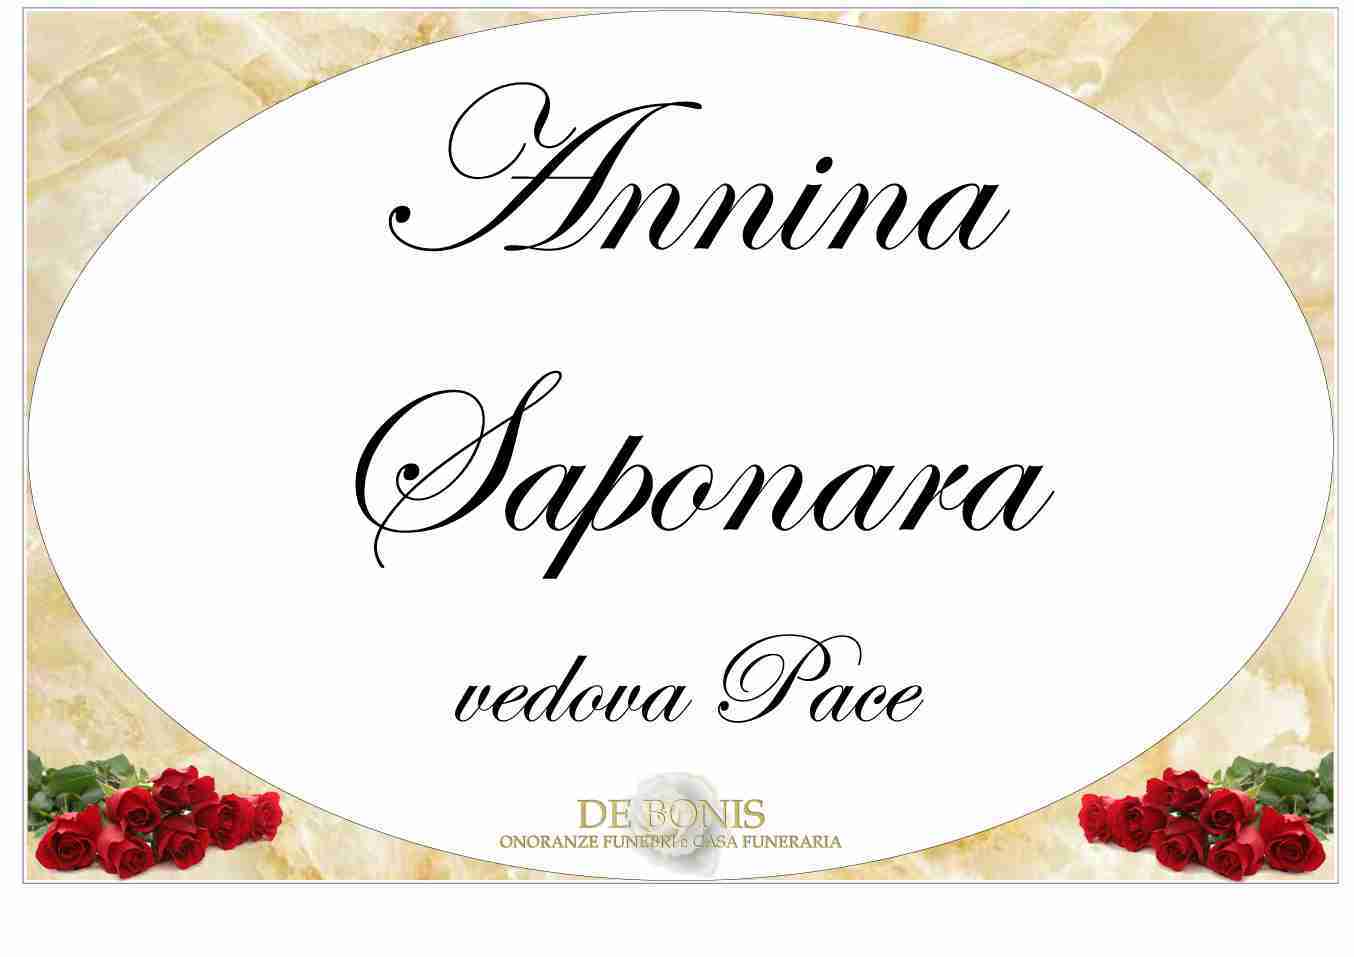 Annina Saponara